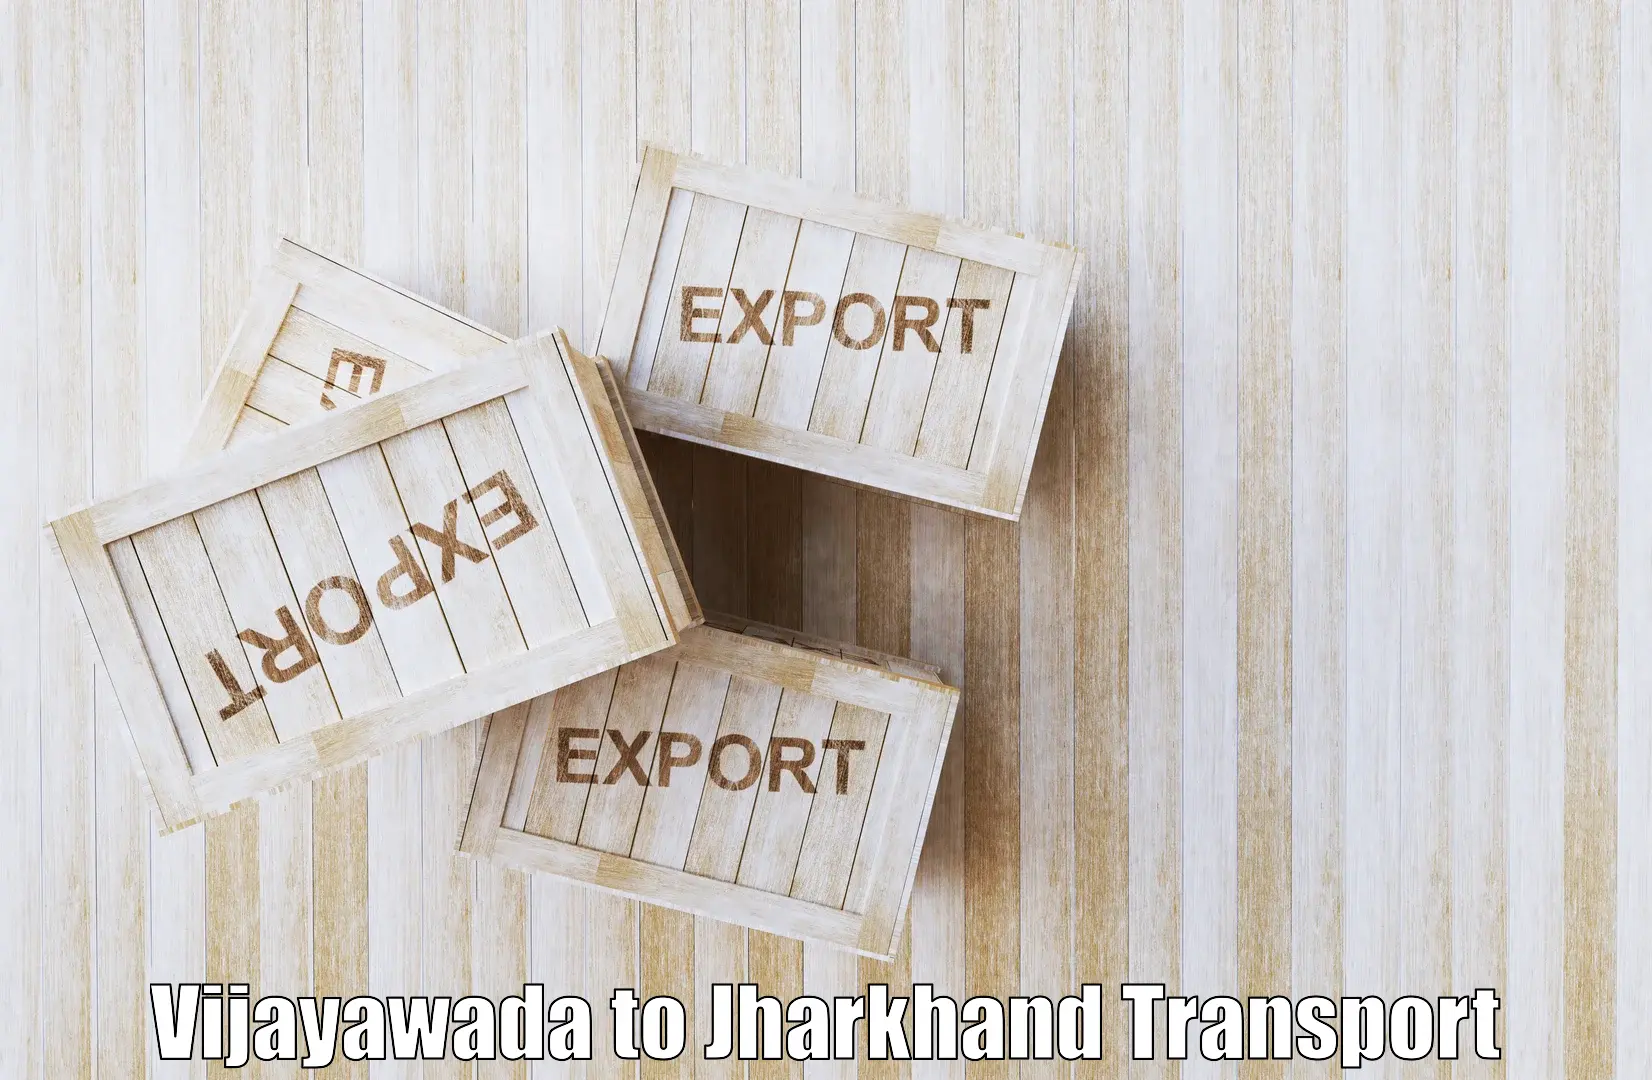 Cargo transport services Vijayawada to Medininagar